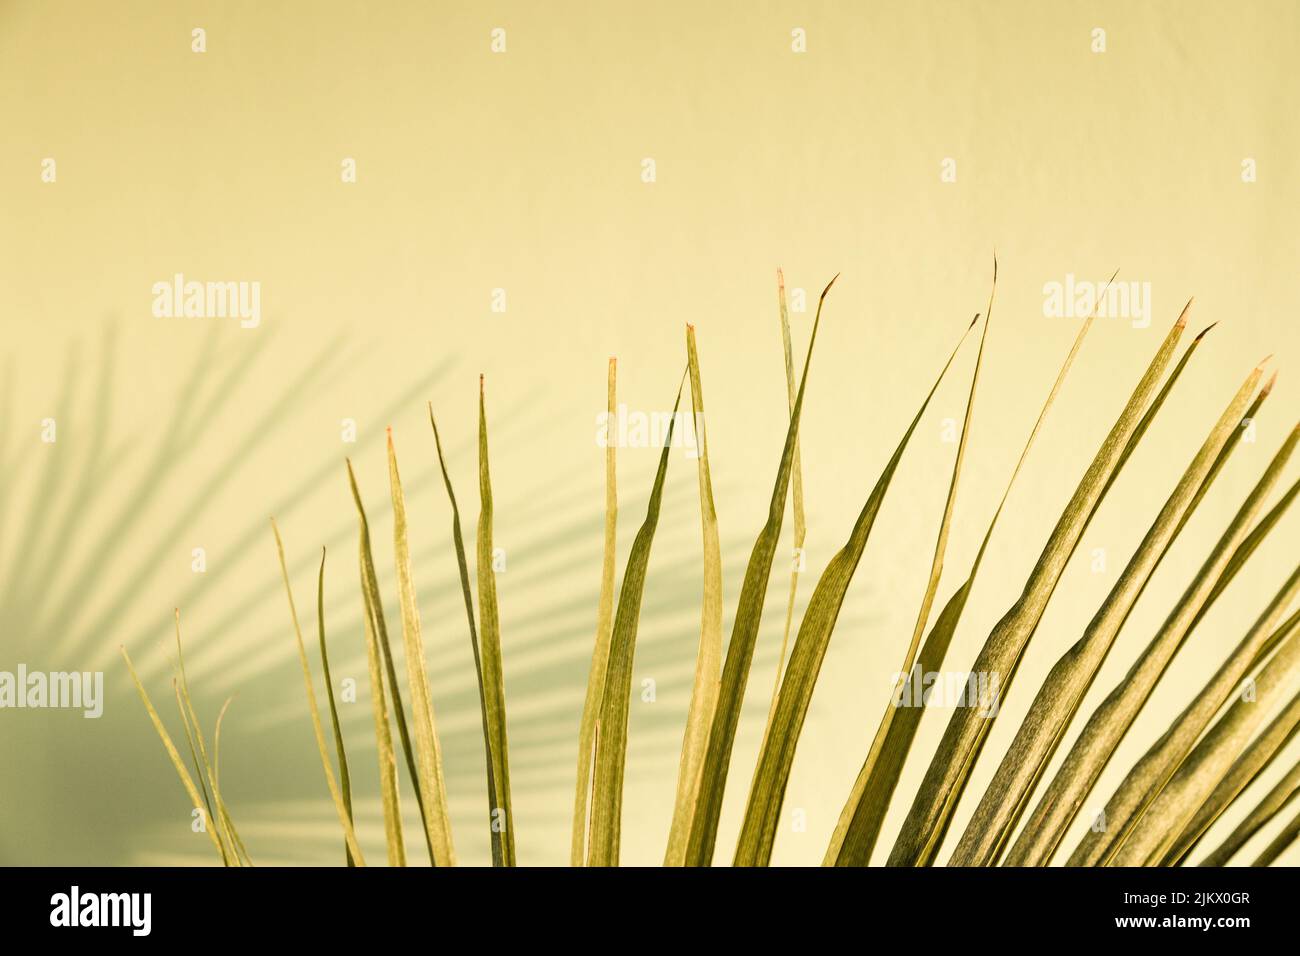 Feuille de palmier vert à faible saturation avec son ombre floue sur la paroi en stuc vert. Décor minimaliste de plantes tropicales d'été. Intérieur miteux Banque D'Images